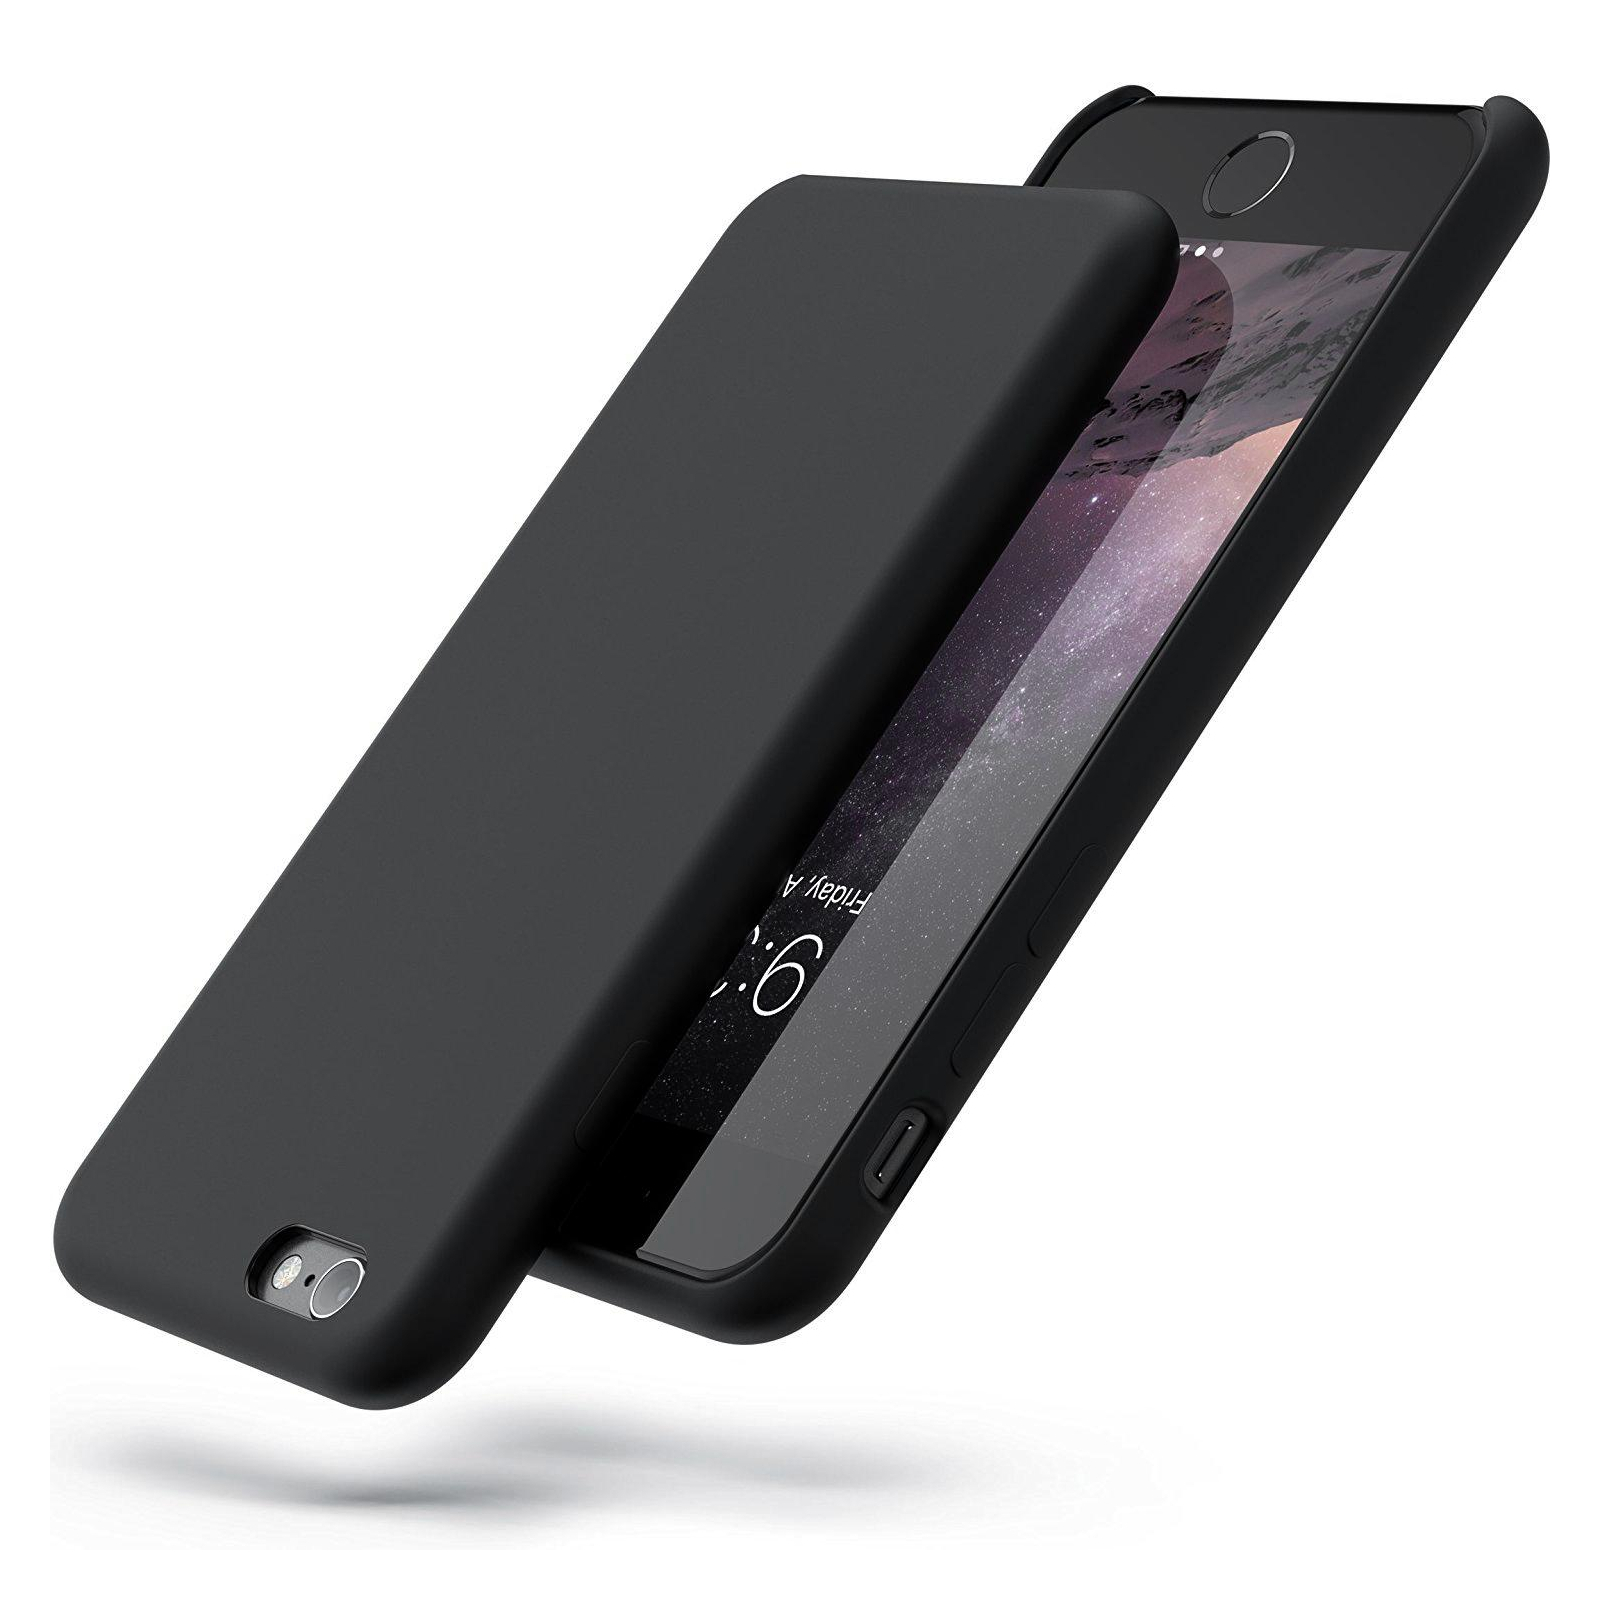 Чехол для мобильного телефона Laudtec для iPhone 6/6s liquid case (black) (LT-I6LC) изображение 2